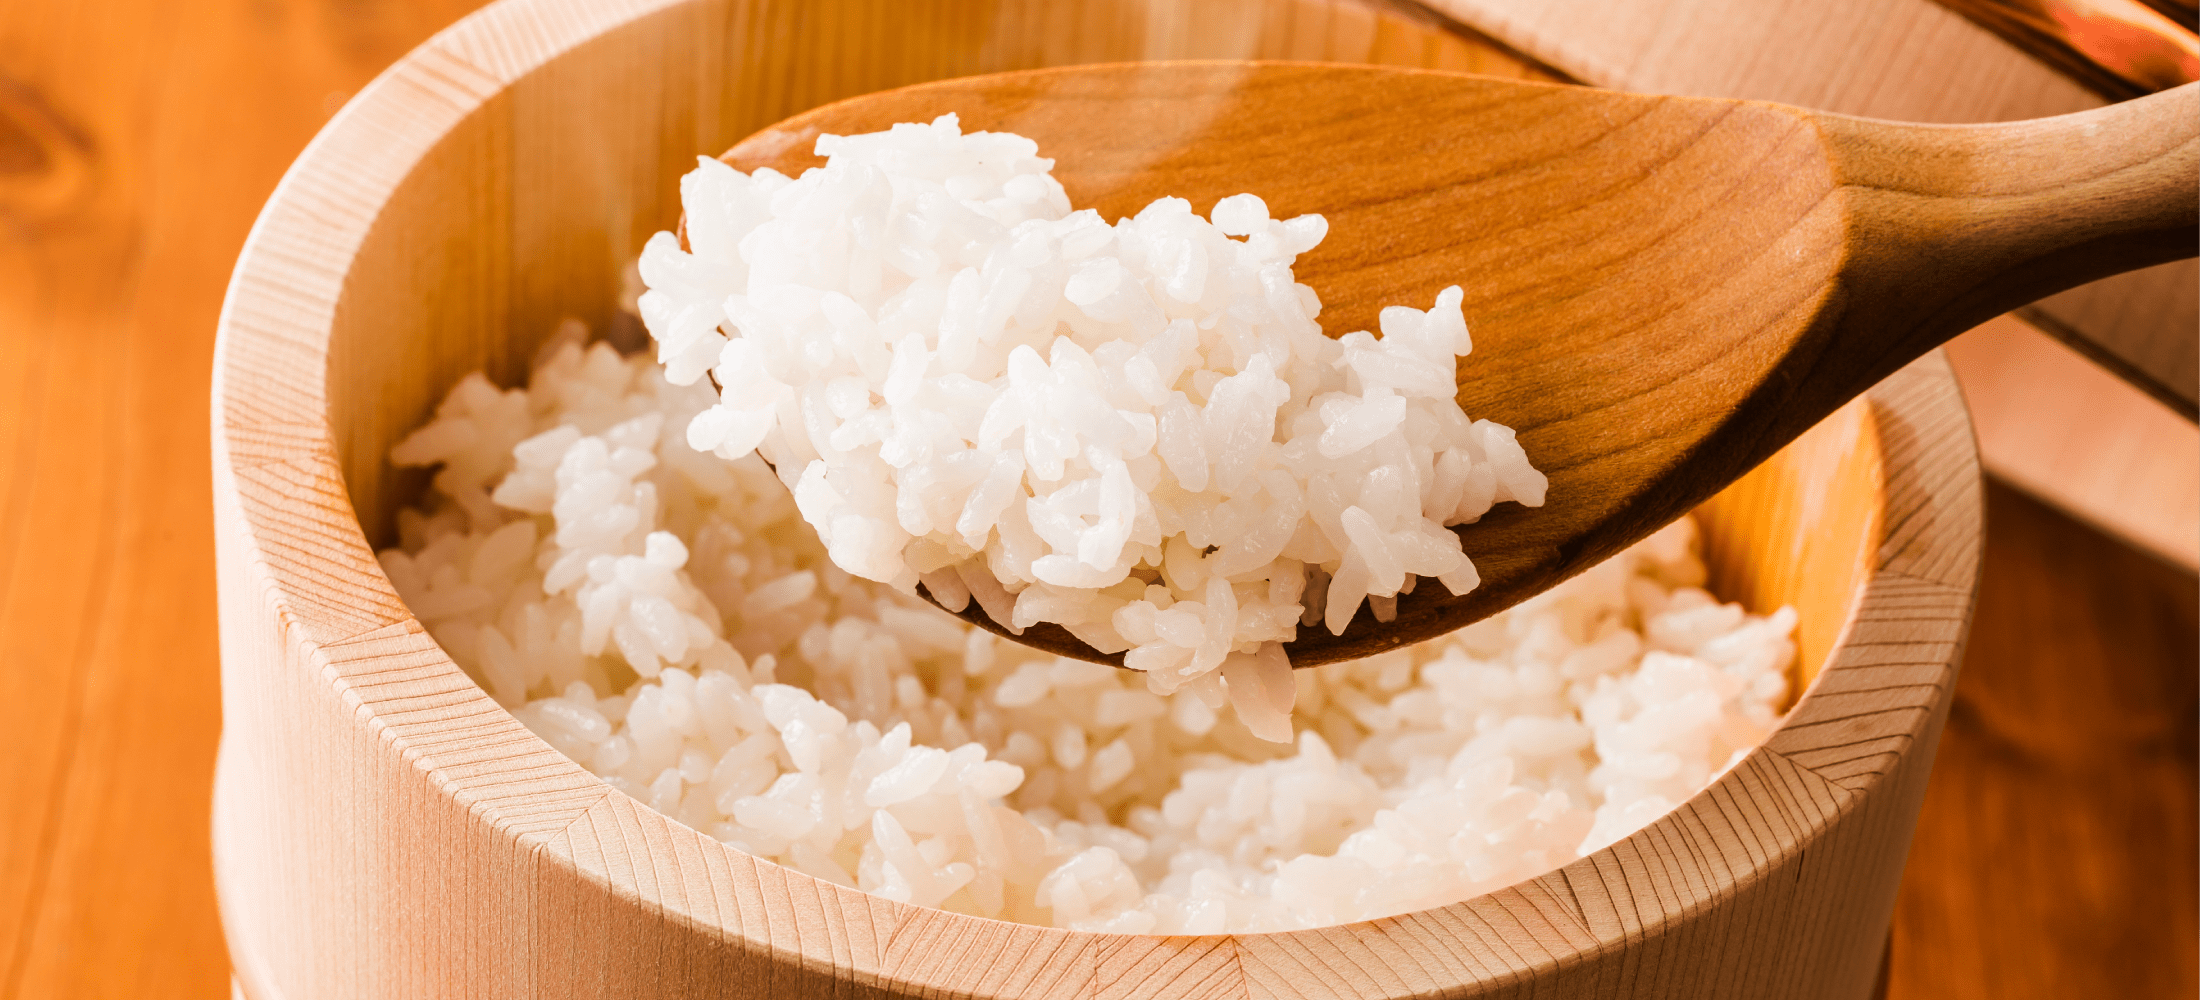 土地によって、使用する『お米』を変えるのも大戸屋のこだわりです。